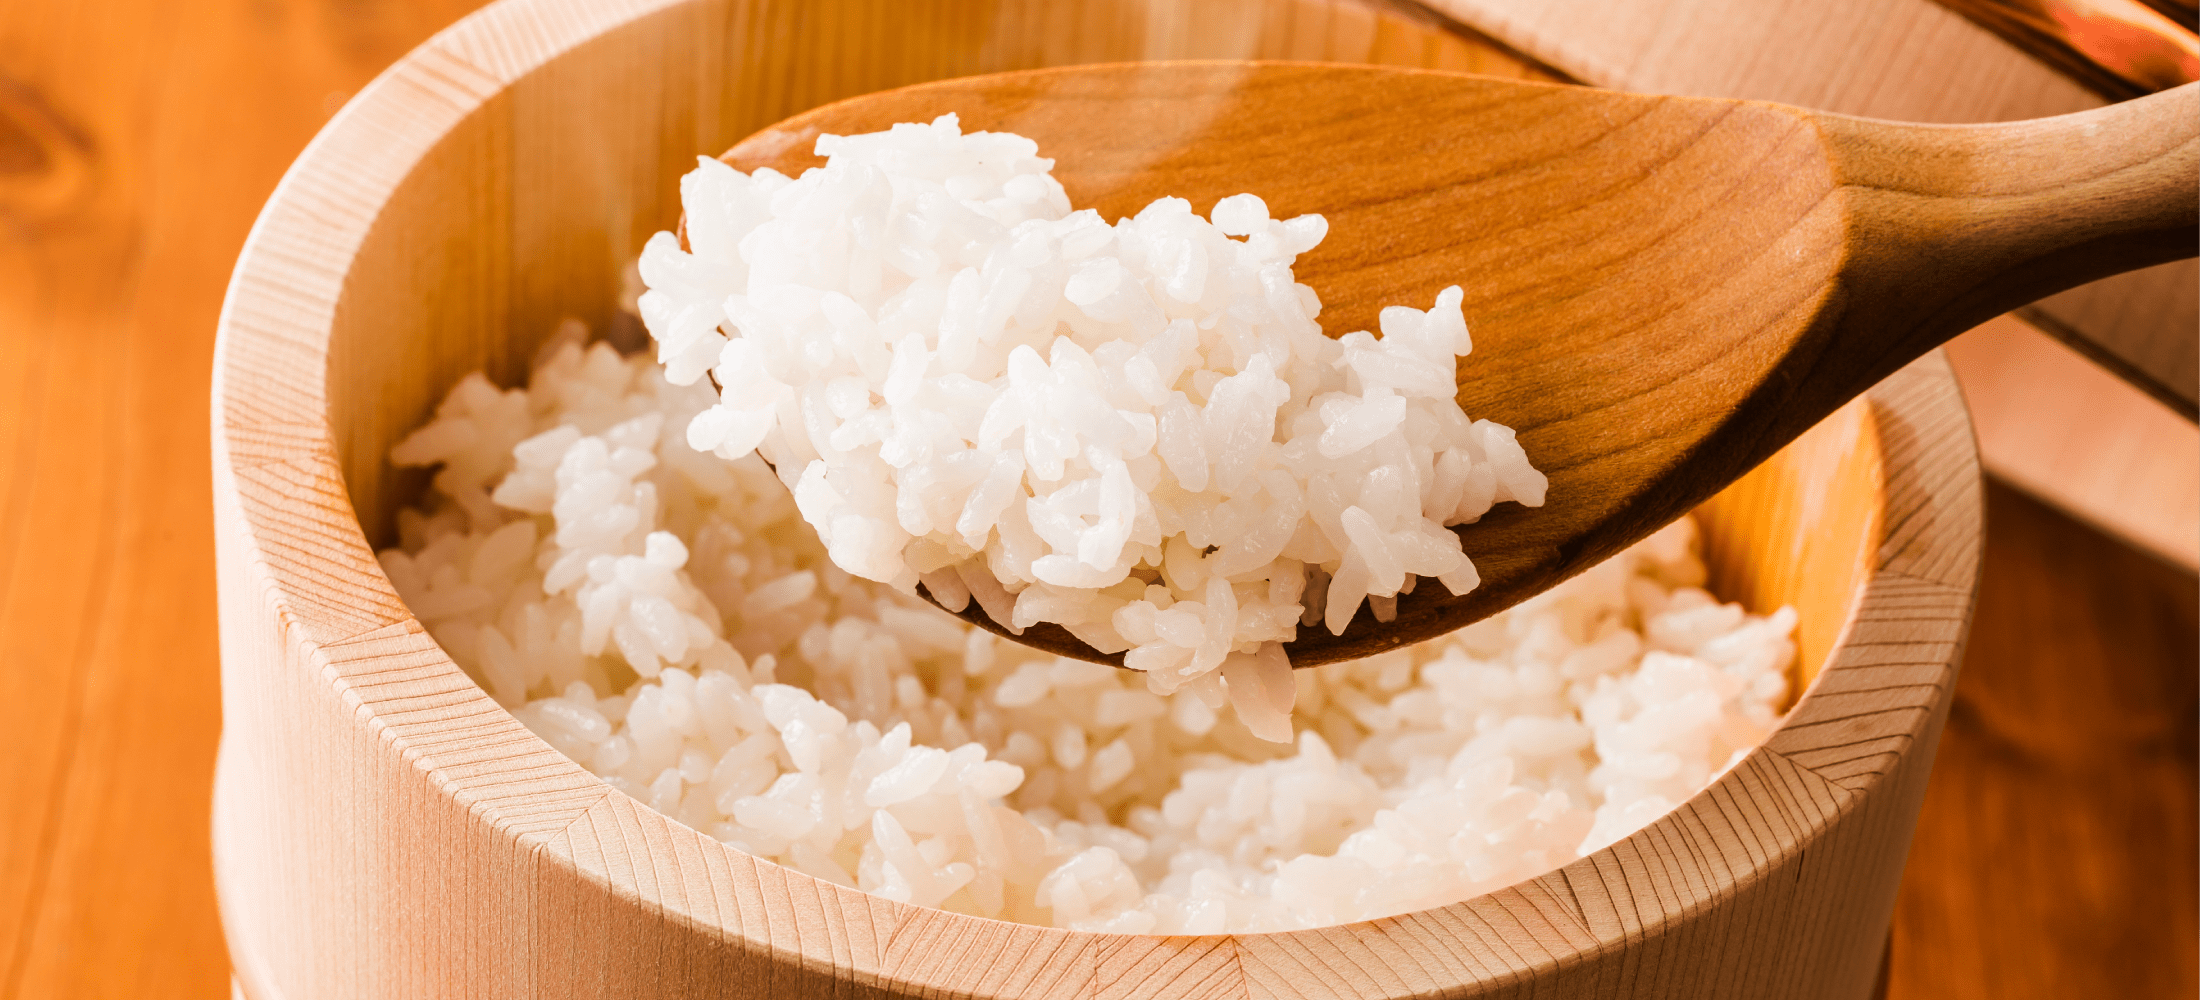 土地によって、使用する『お米』を変えるのも大戸屋のこだわりです。